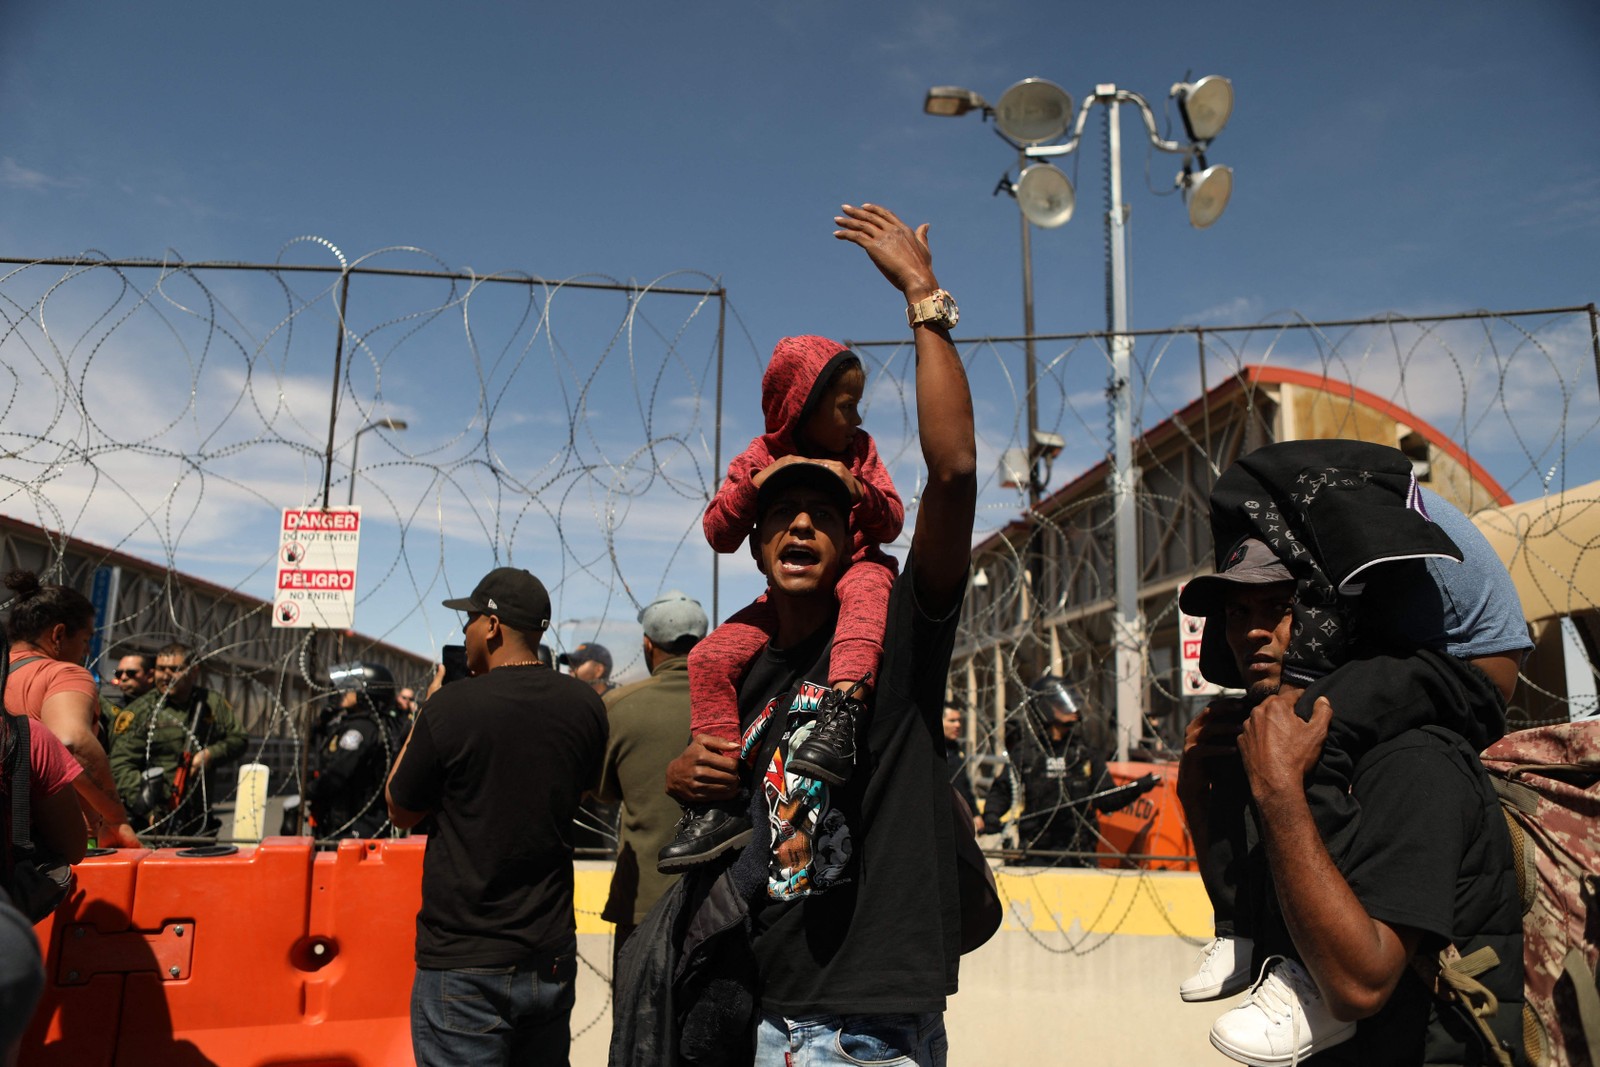 Imigrantes disseram à AFP que achavam que poderiam entrar por causa de uma suposta comemoração do "dia do migrante" — Foto: Herika Martinez / AFP